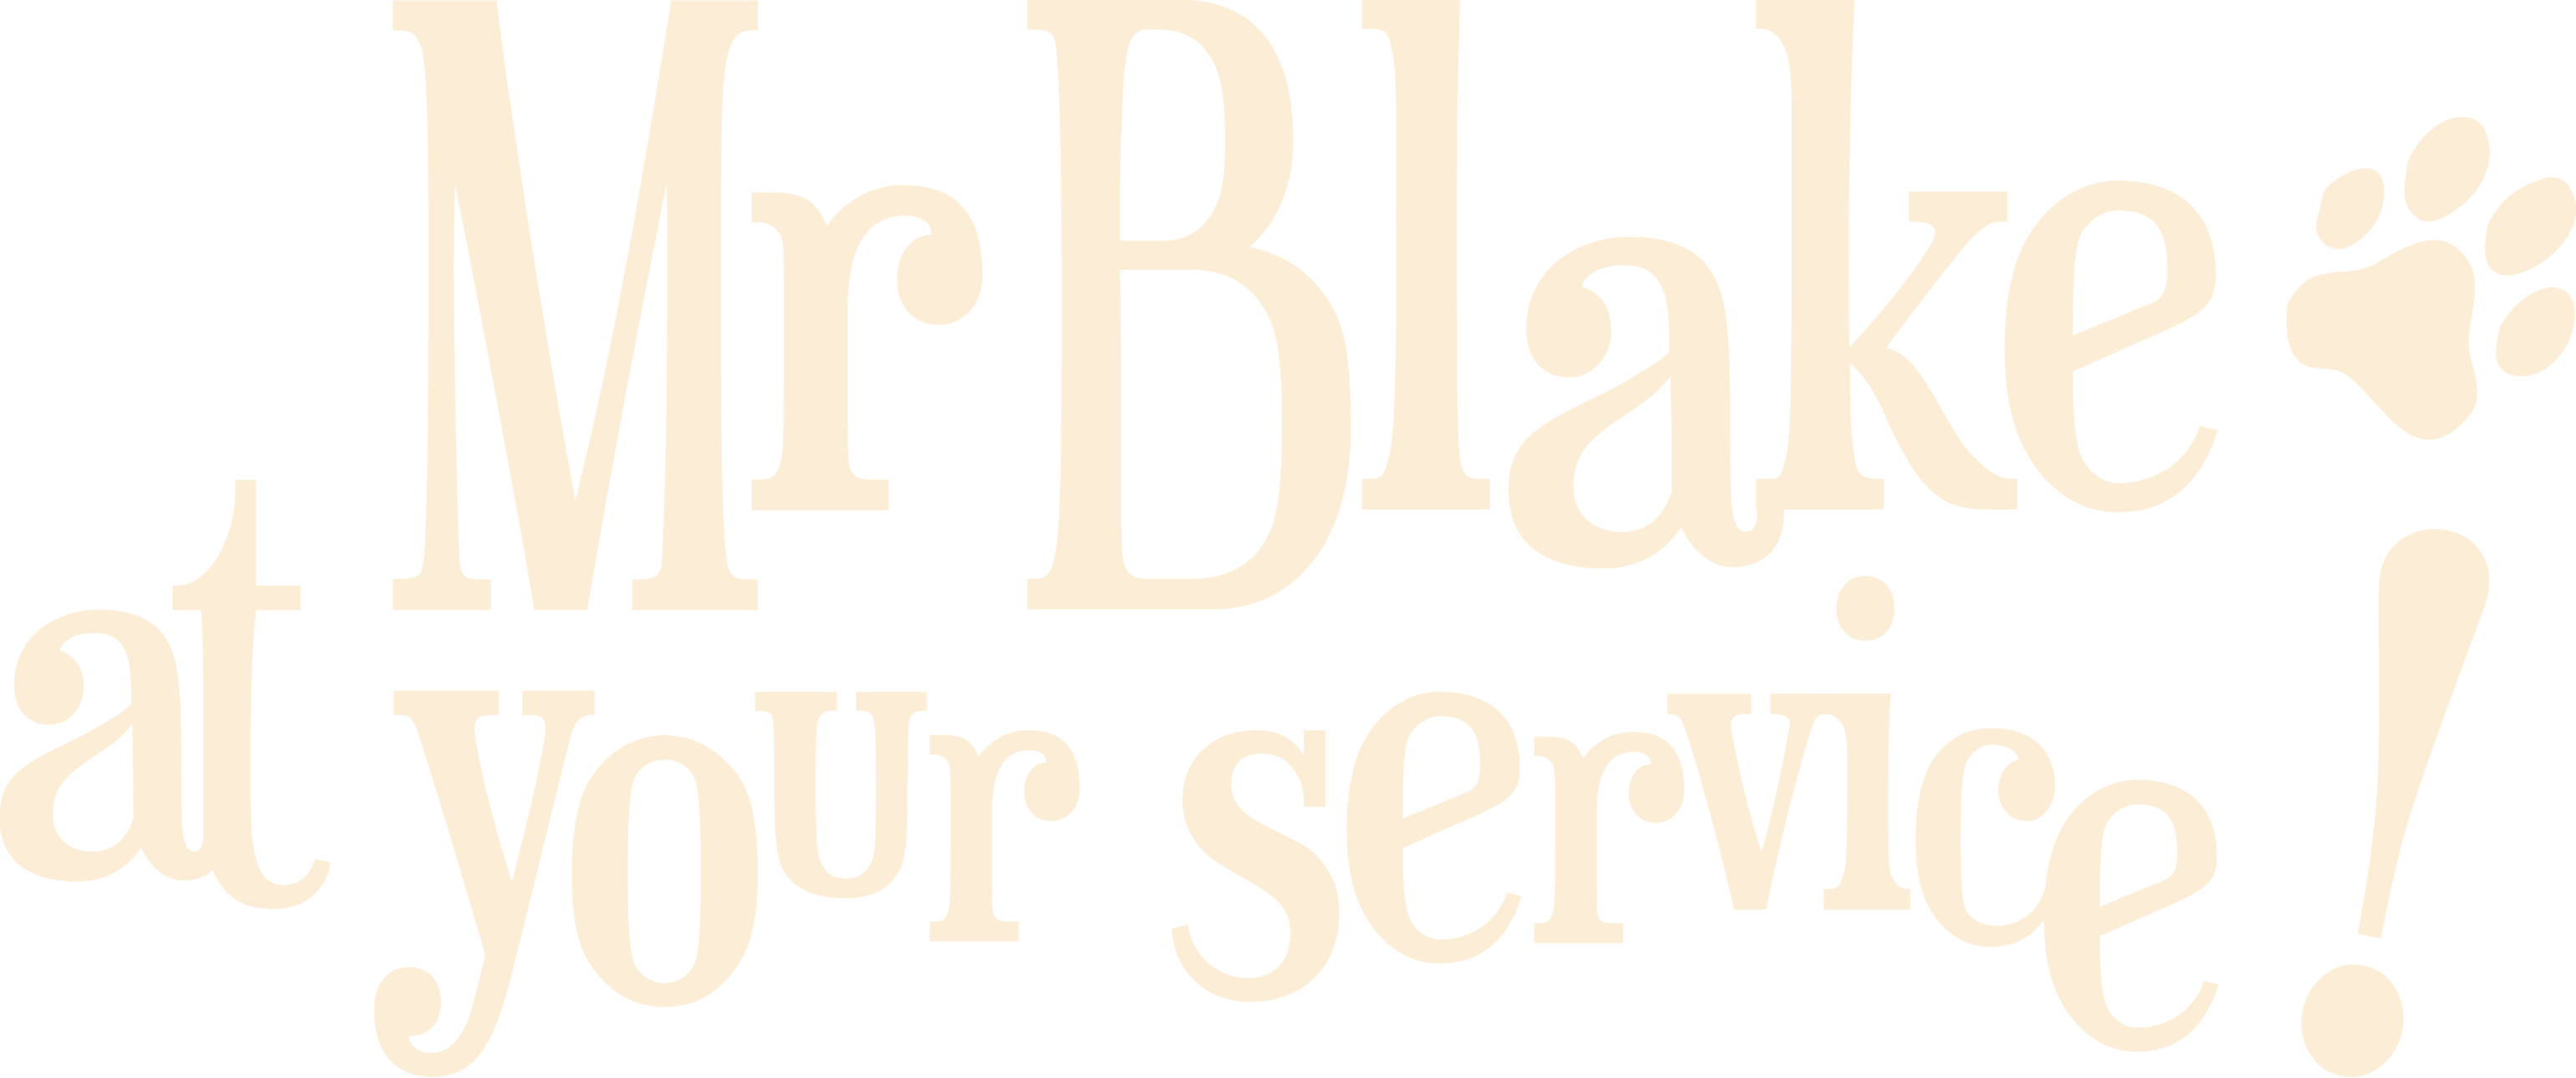 Mr. Blake At Your Service! logo